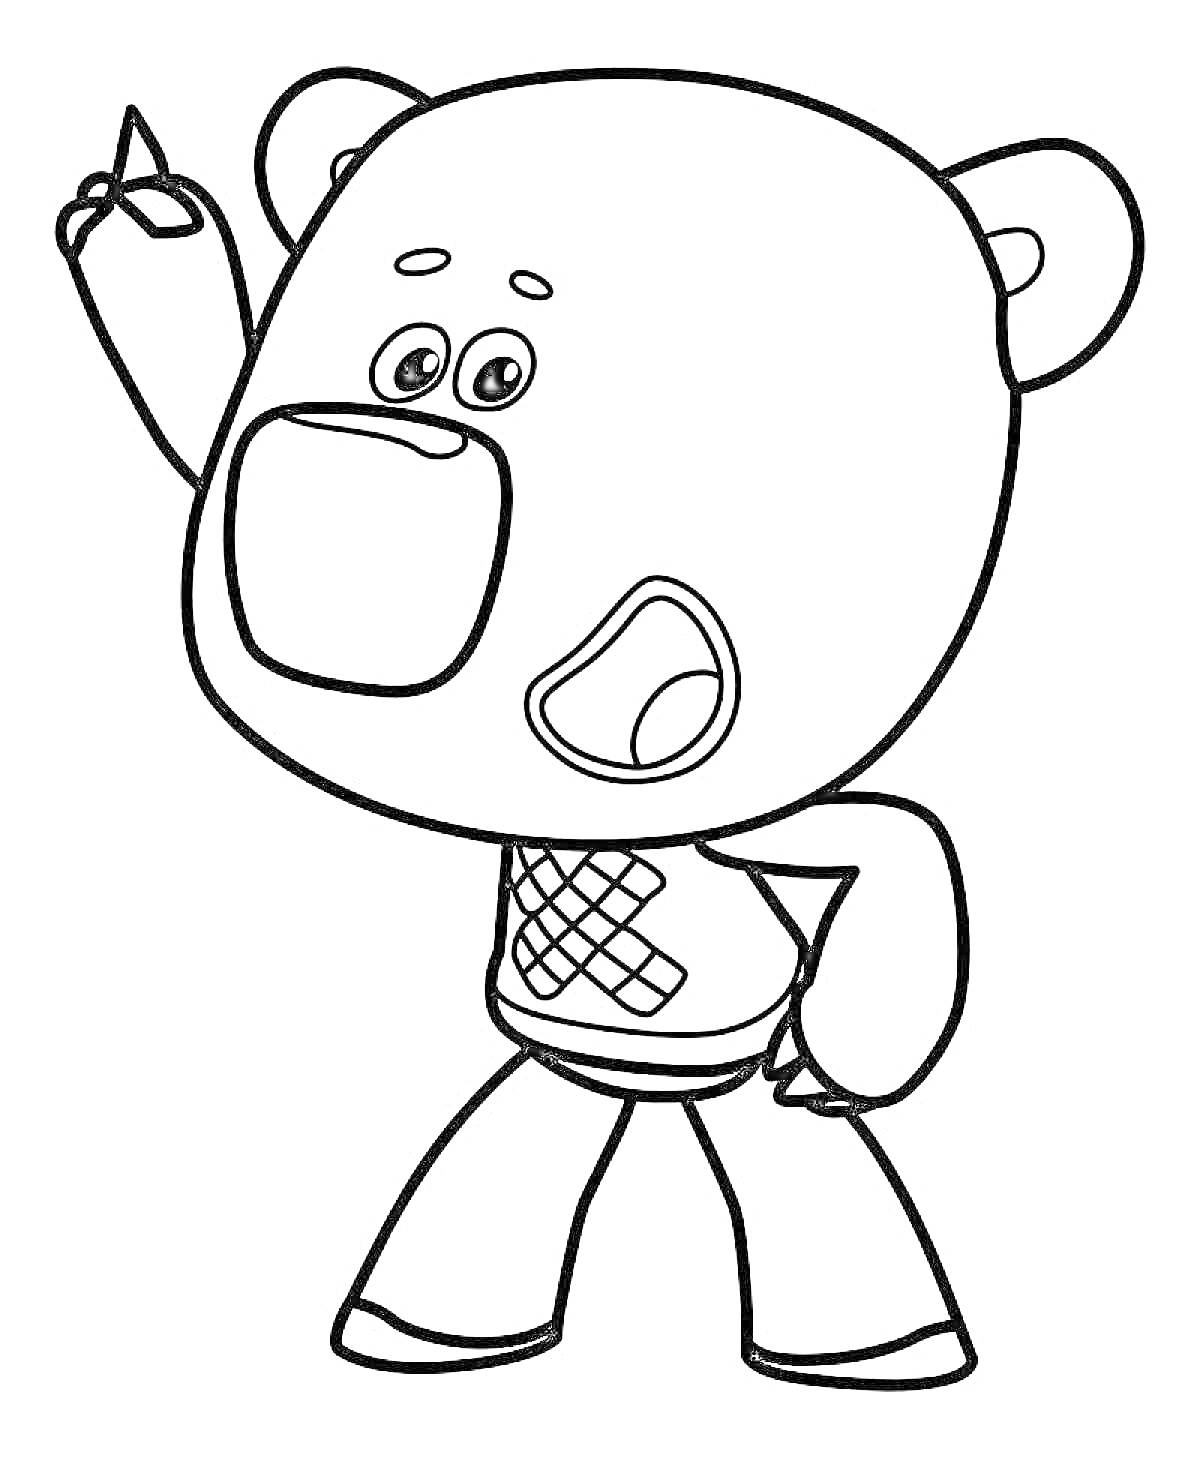 Раскраска Медвежонок с поднятой вверх рукой и открытым ртом